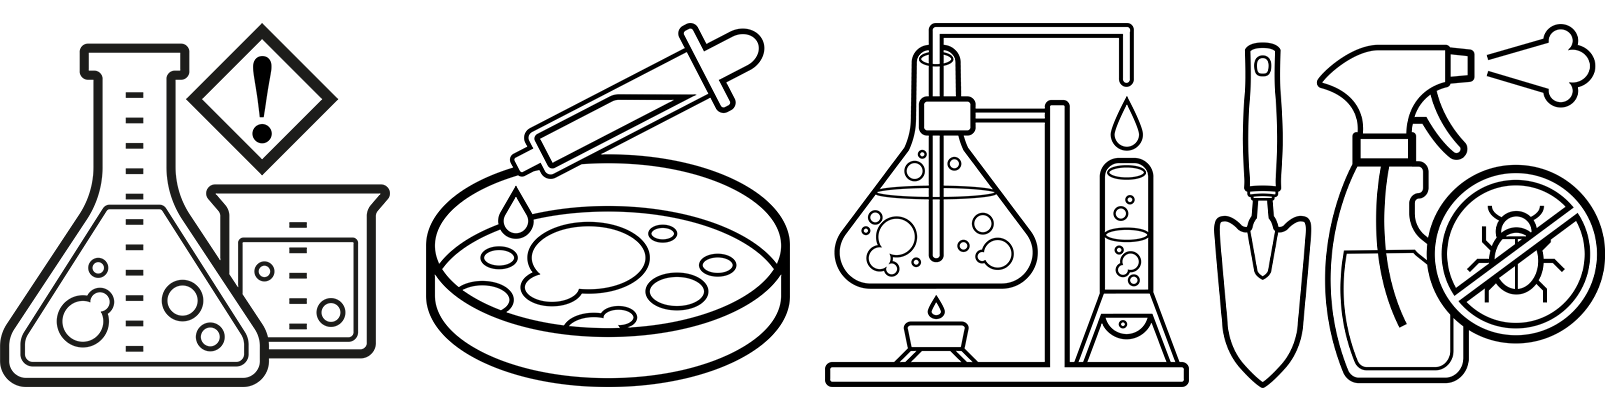 vier Icons zur Anwendung des X-plore 3300 Chemiearbeitersets